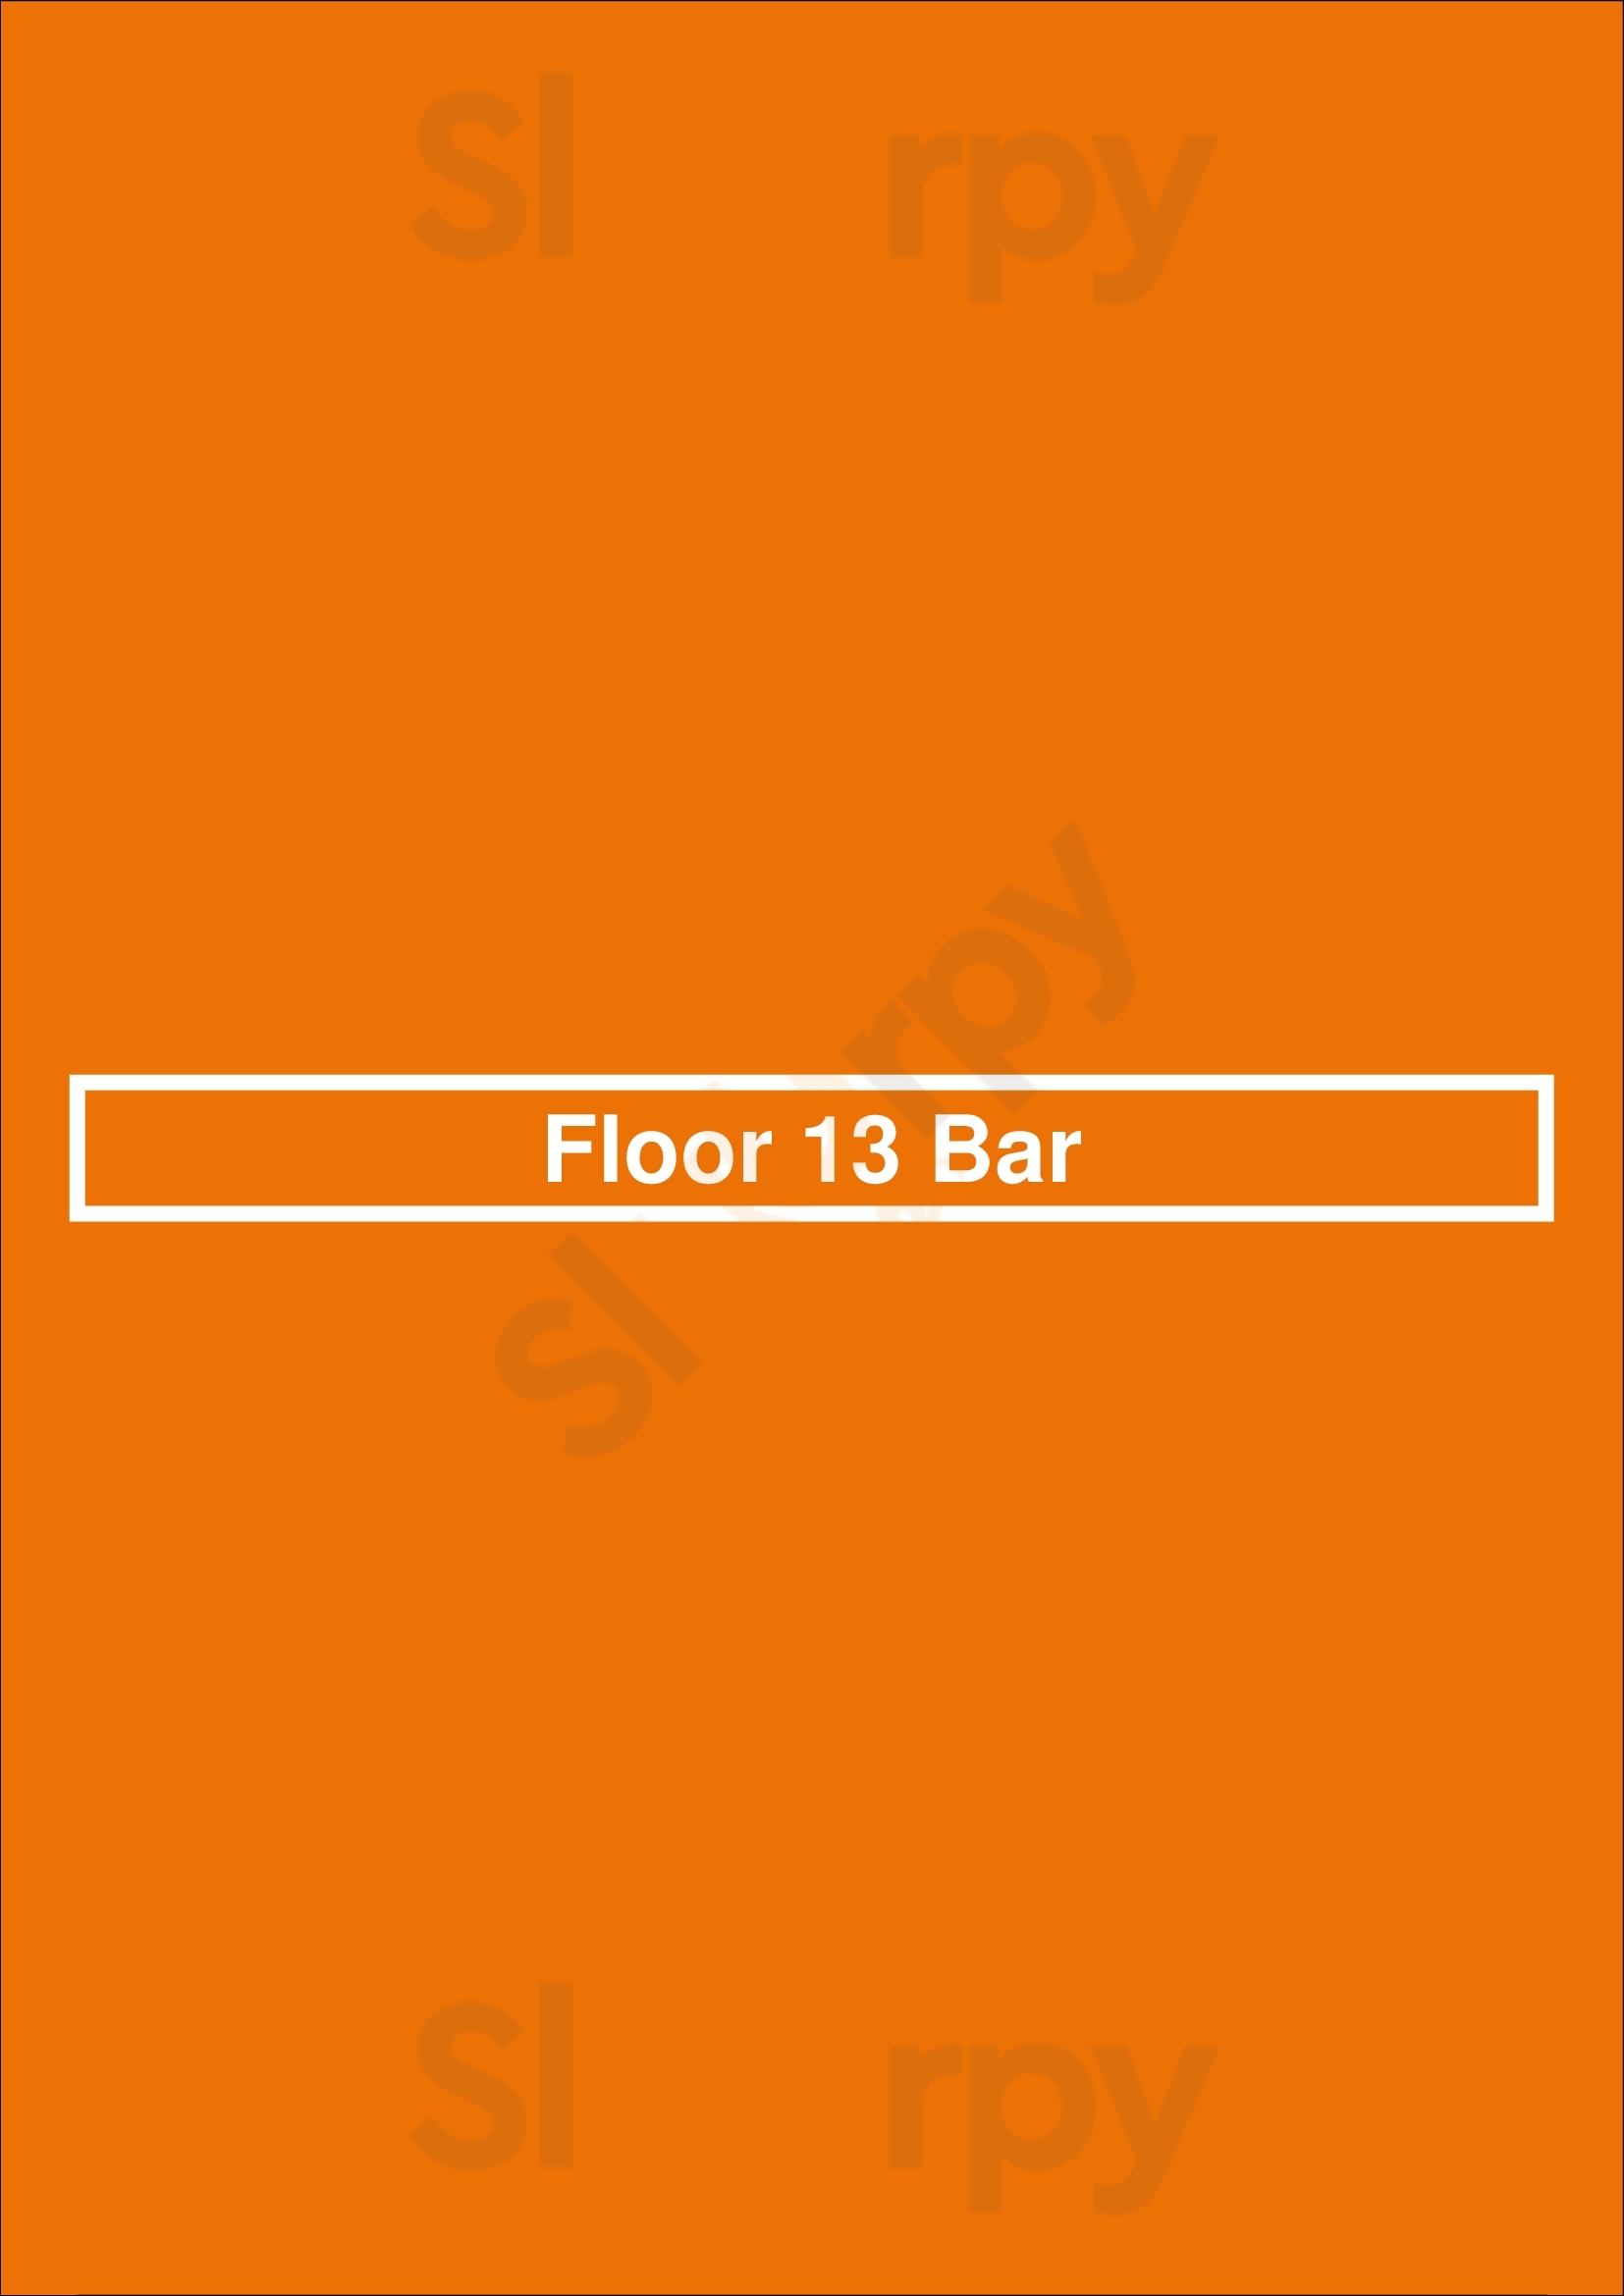 Floor 13 Rooftop Bar Phoenix Menu - 1